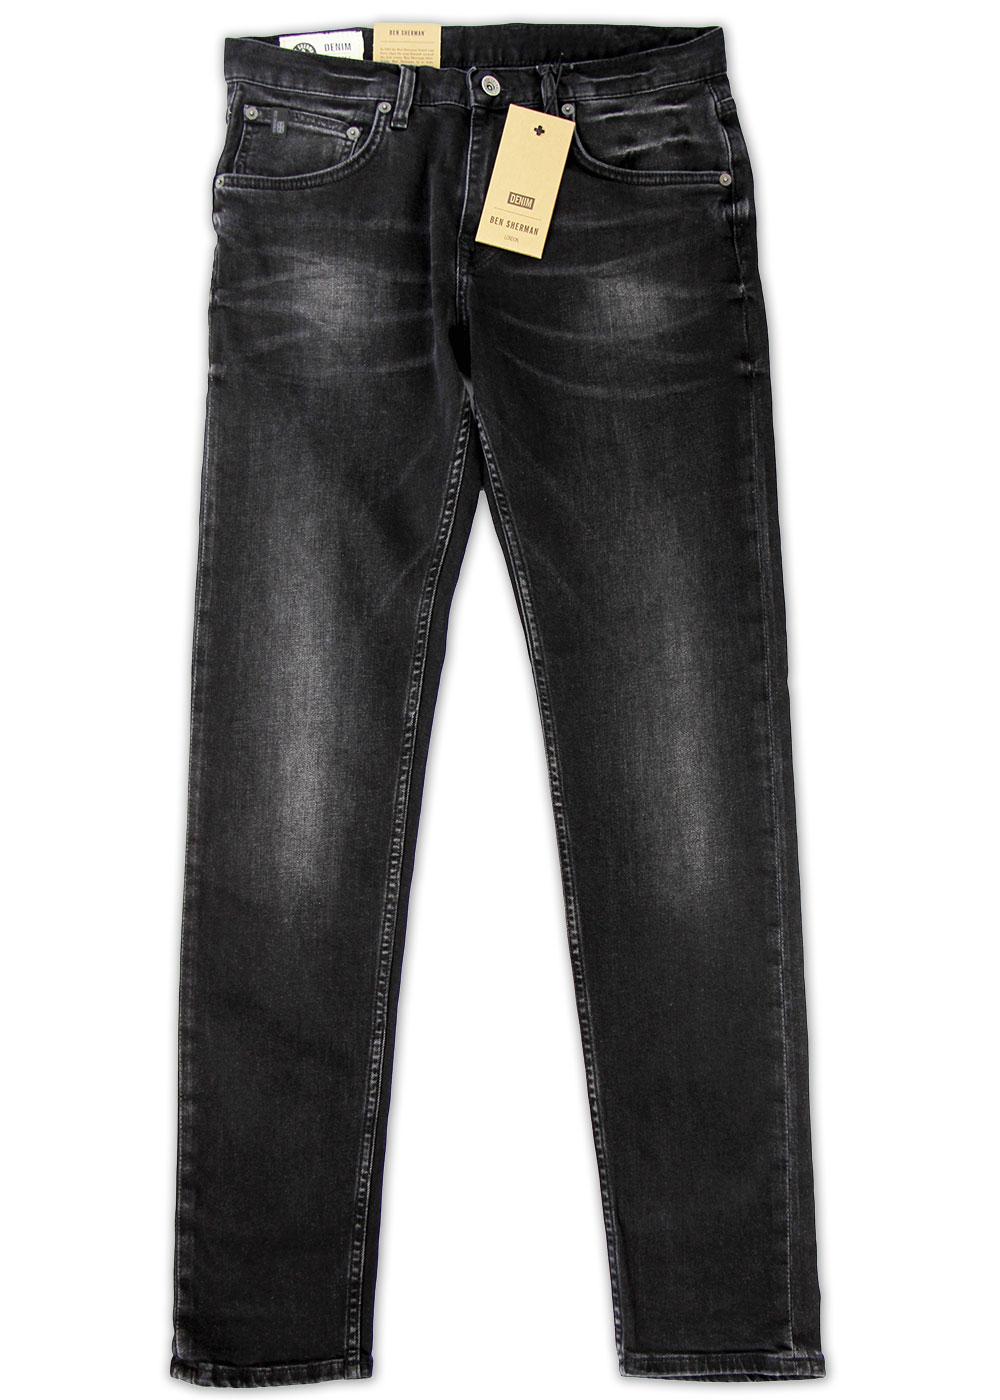 The Dingley BEN SHERMAN Retro Mod Skinny Jeans VB